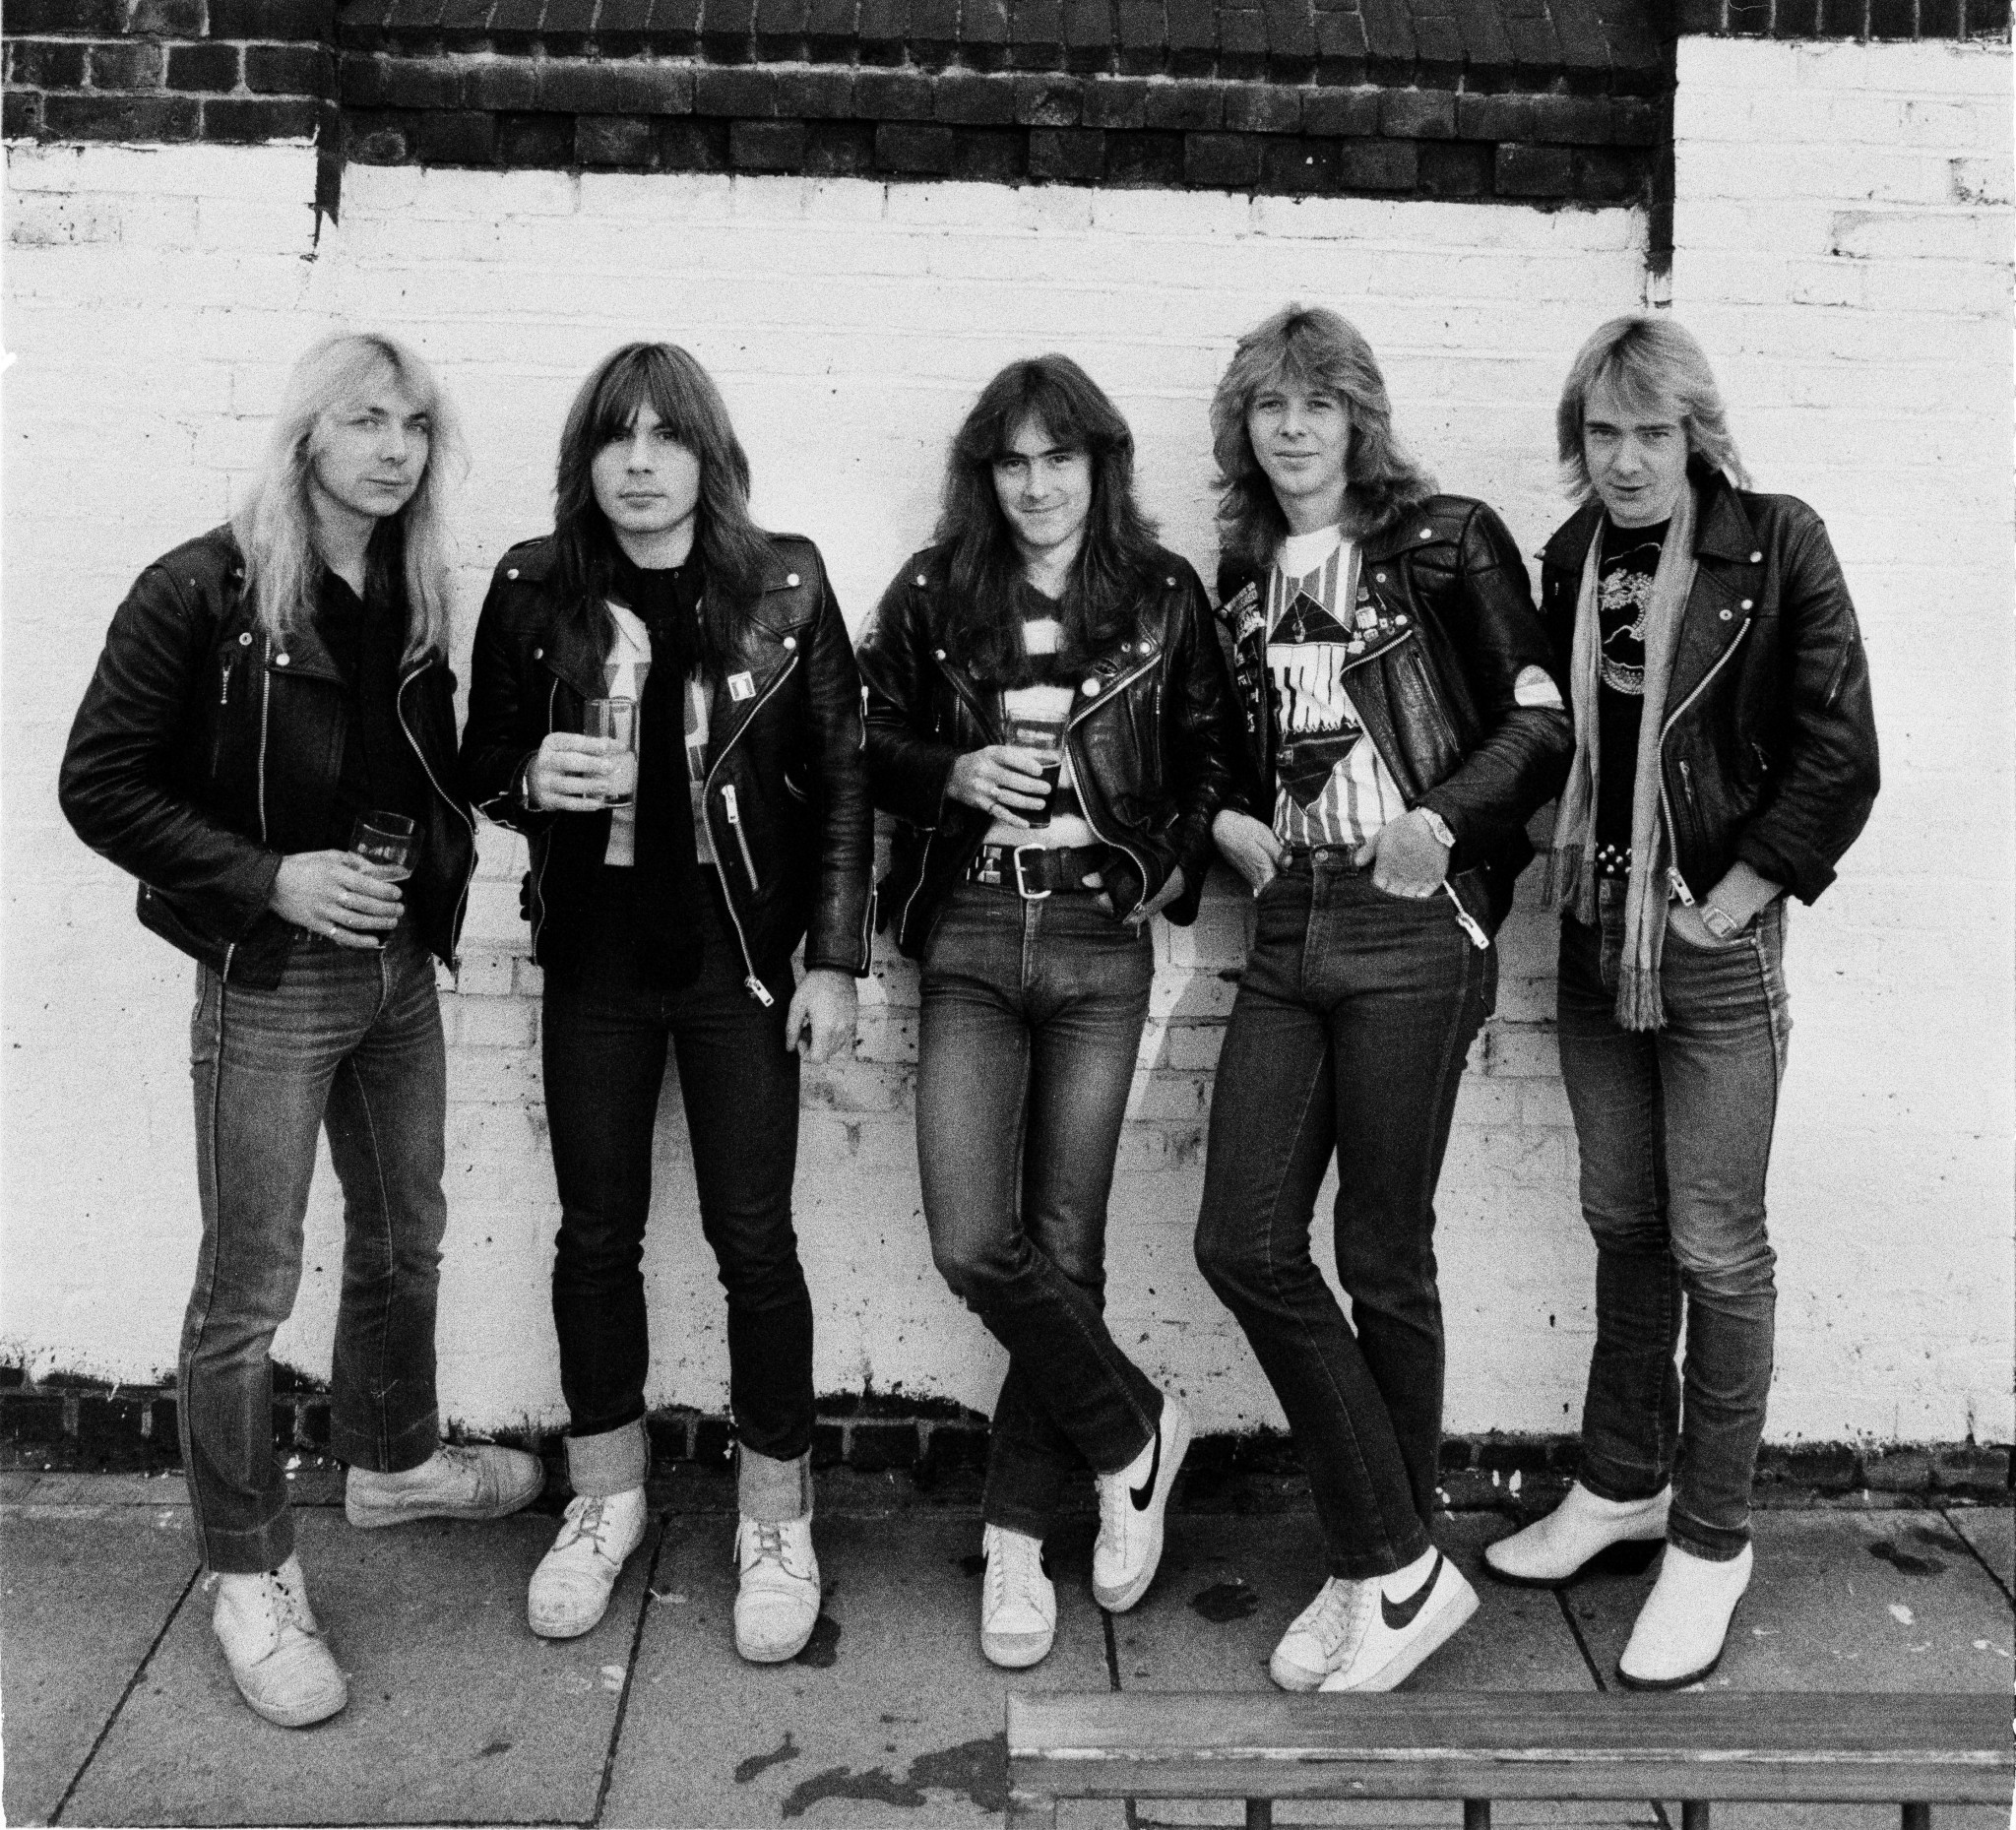 Členovia skupiny Iron Maiden v motorkárskych bundách v roku 1982 v Londýne